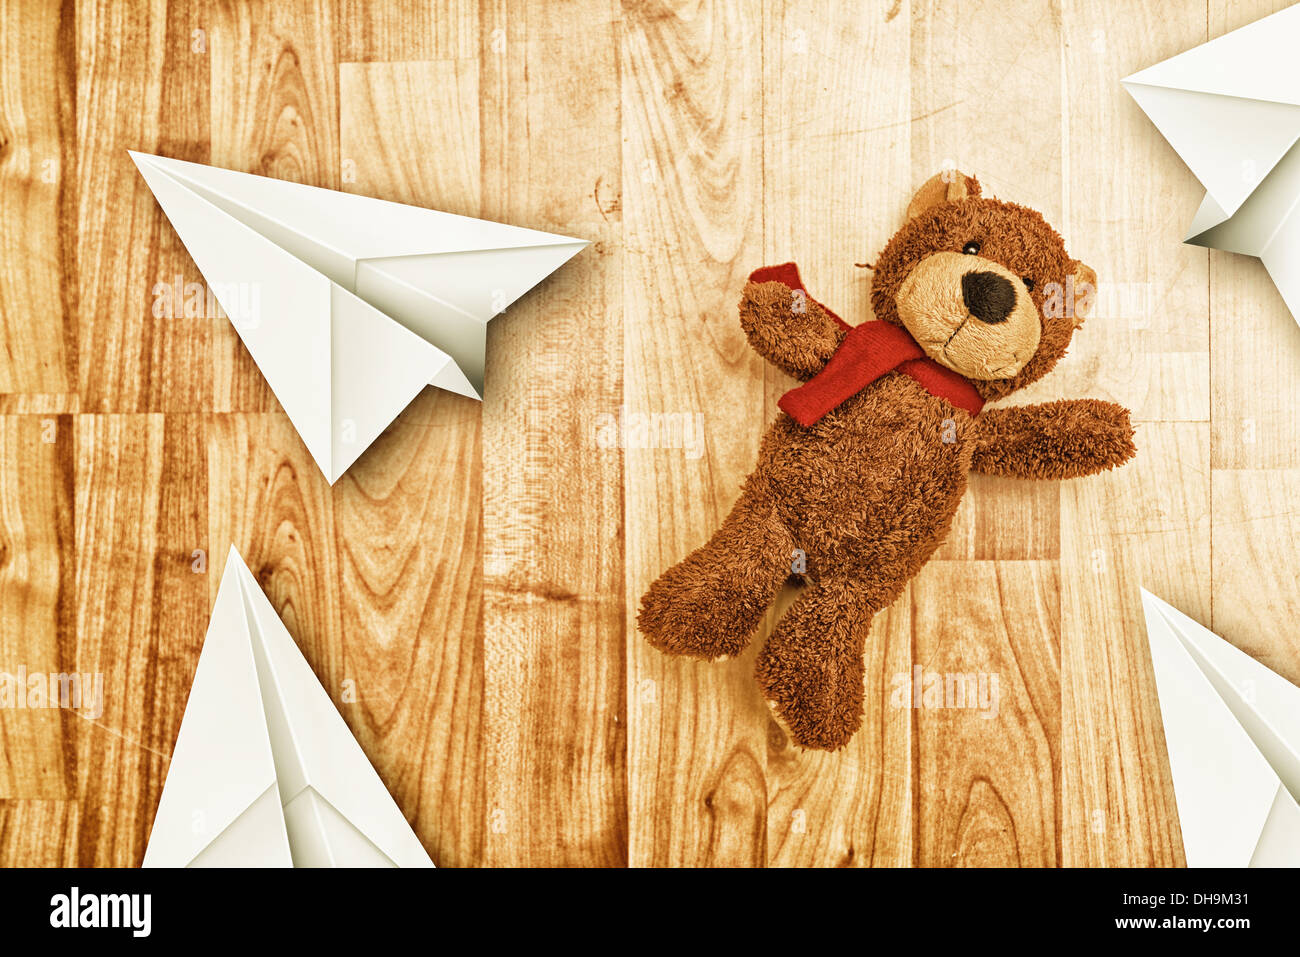 Simpatico orso giocattolo sul laminato pavimento in legno con la carta origami aerei Foto Stock